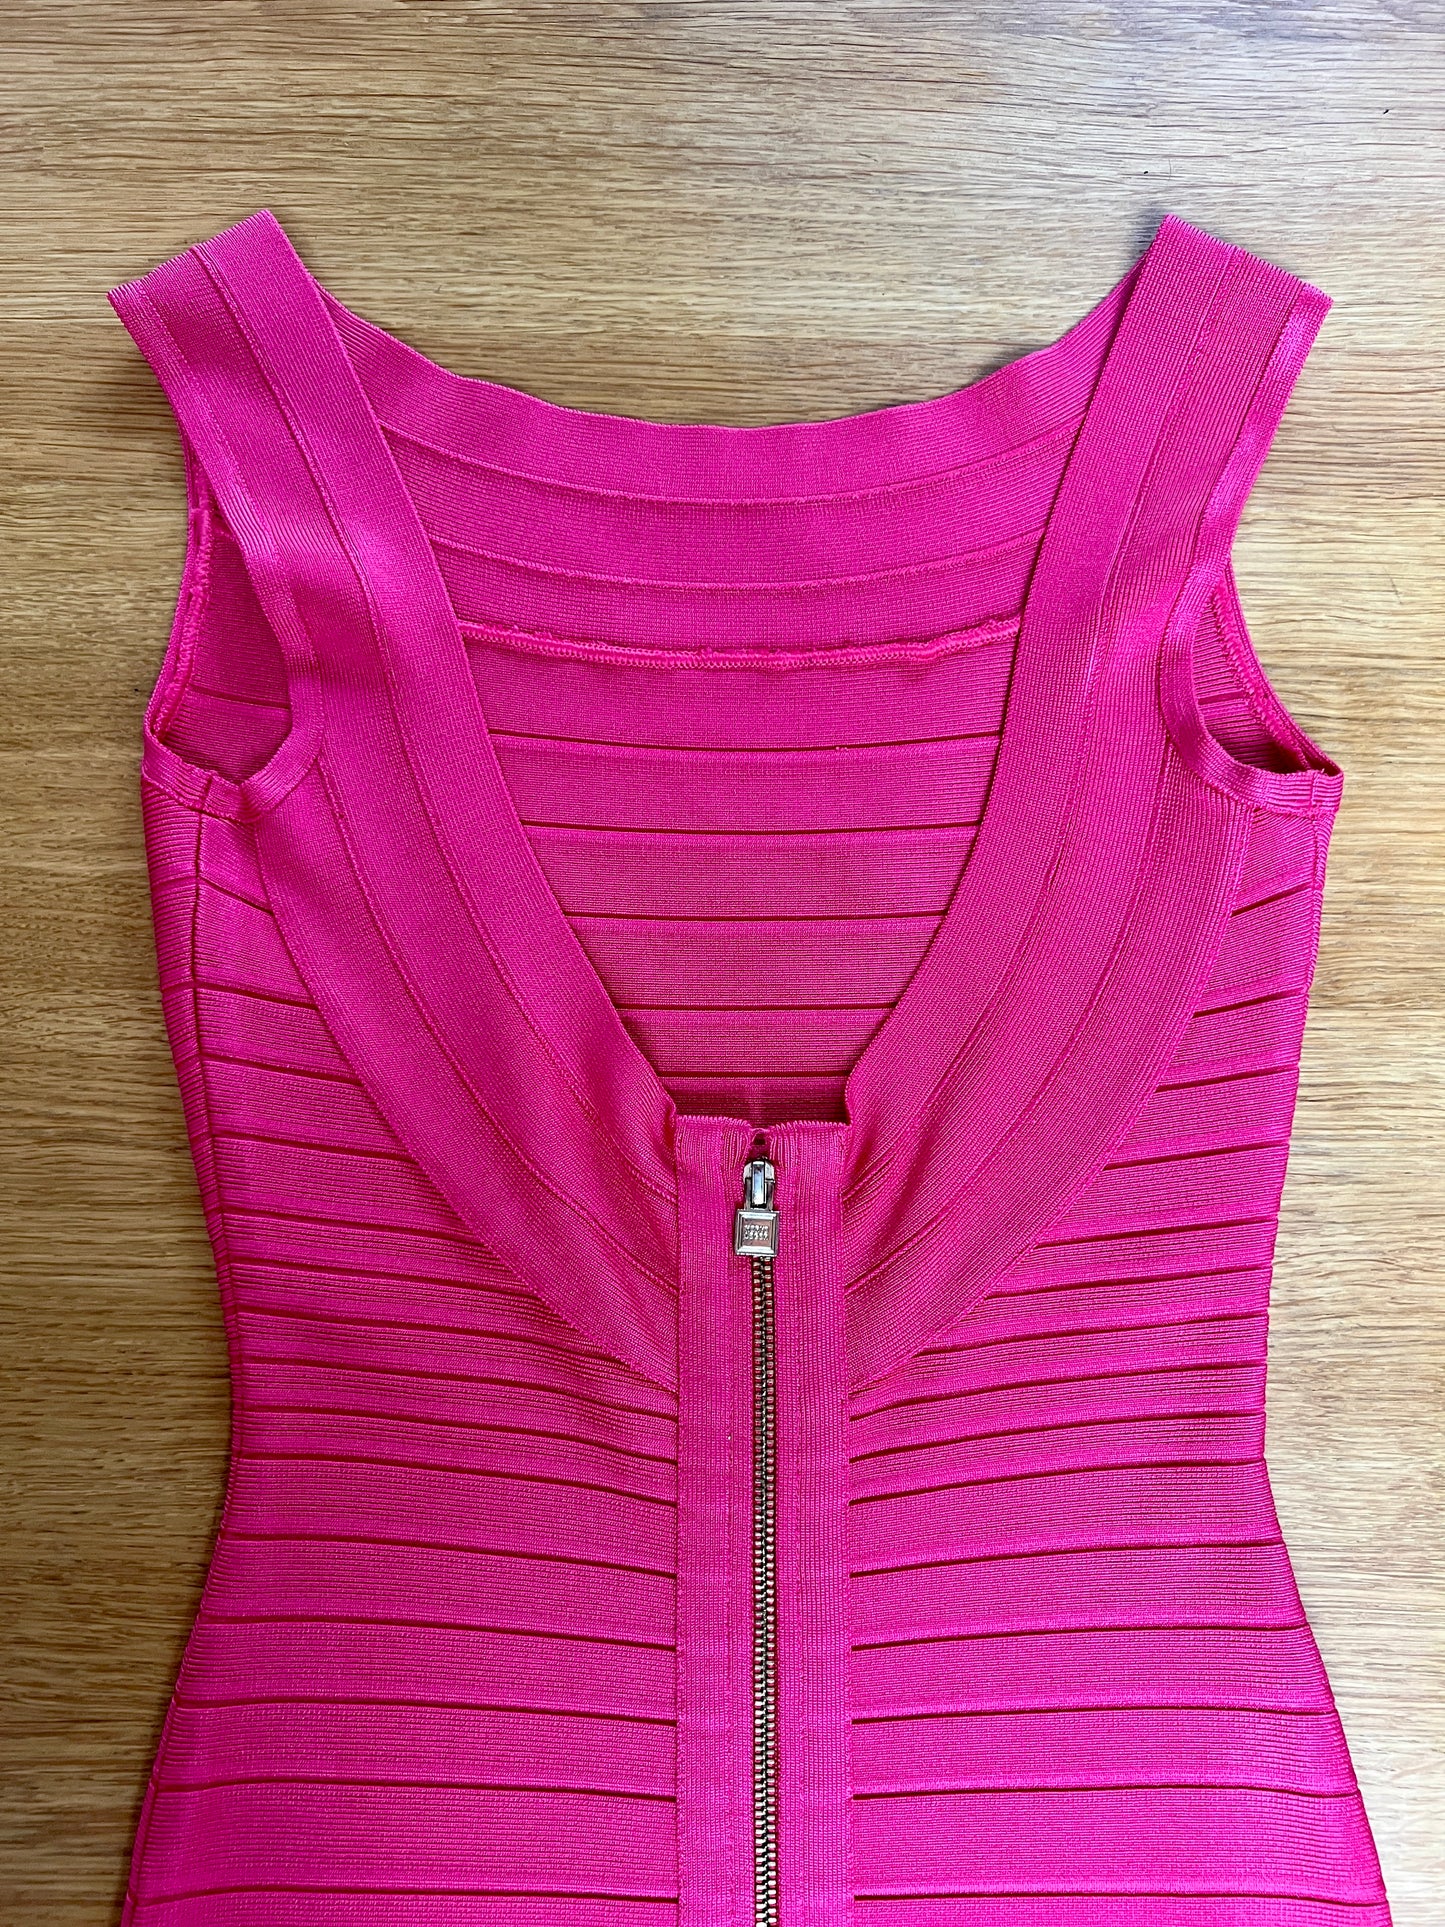 Pink Bandage Dress - XS